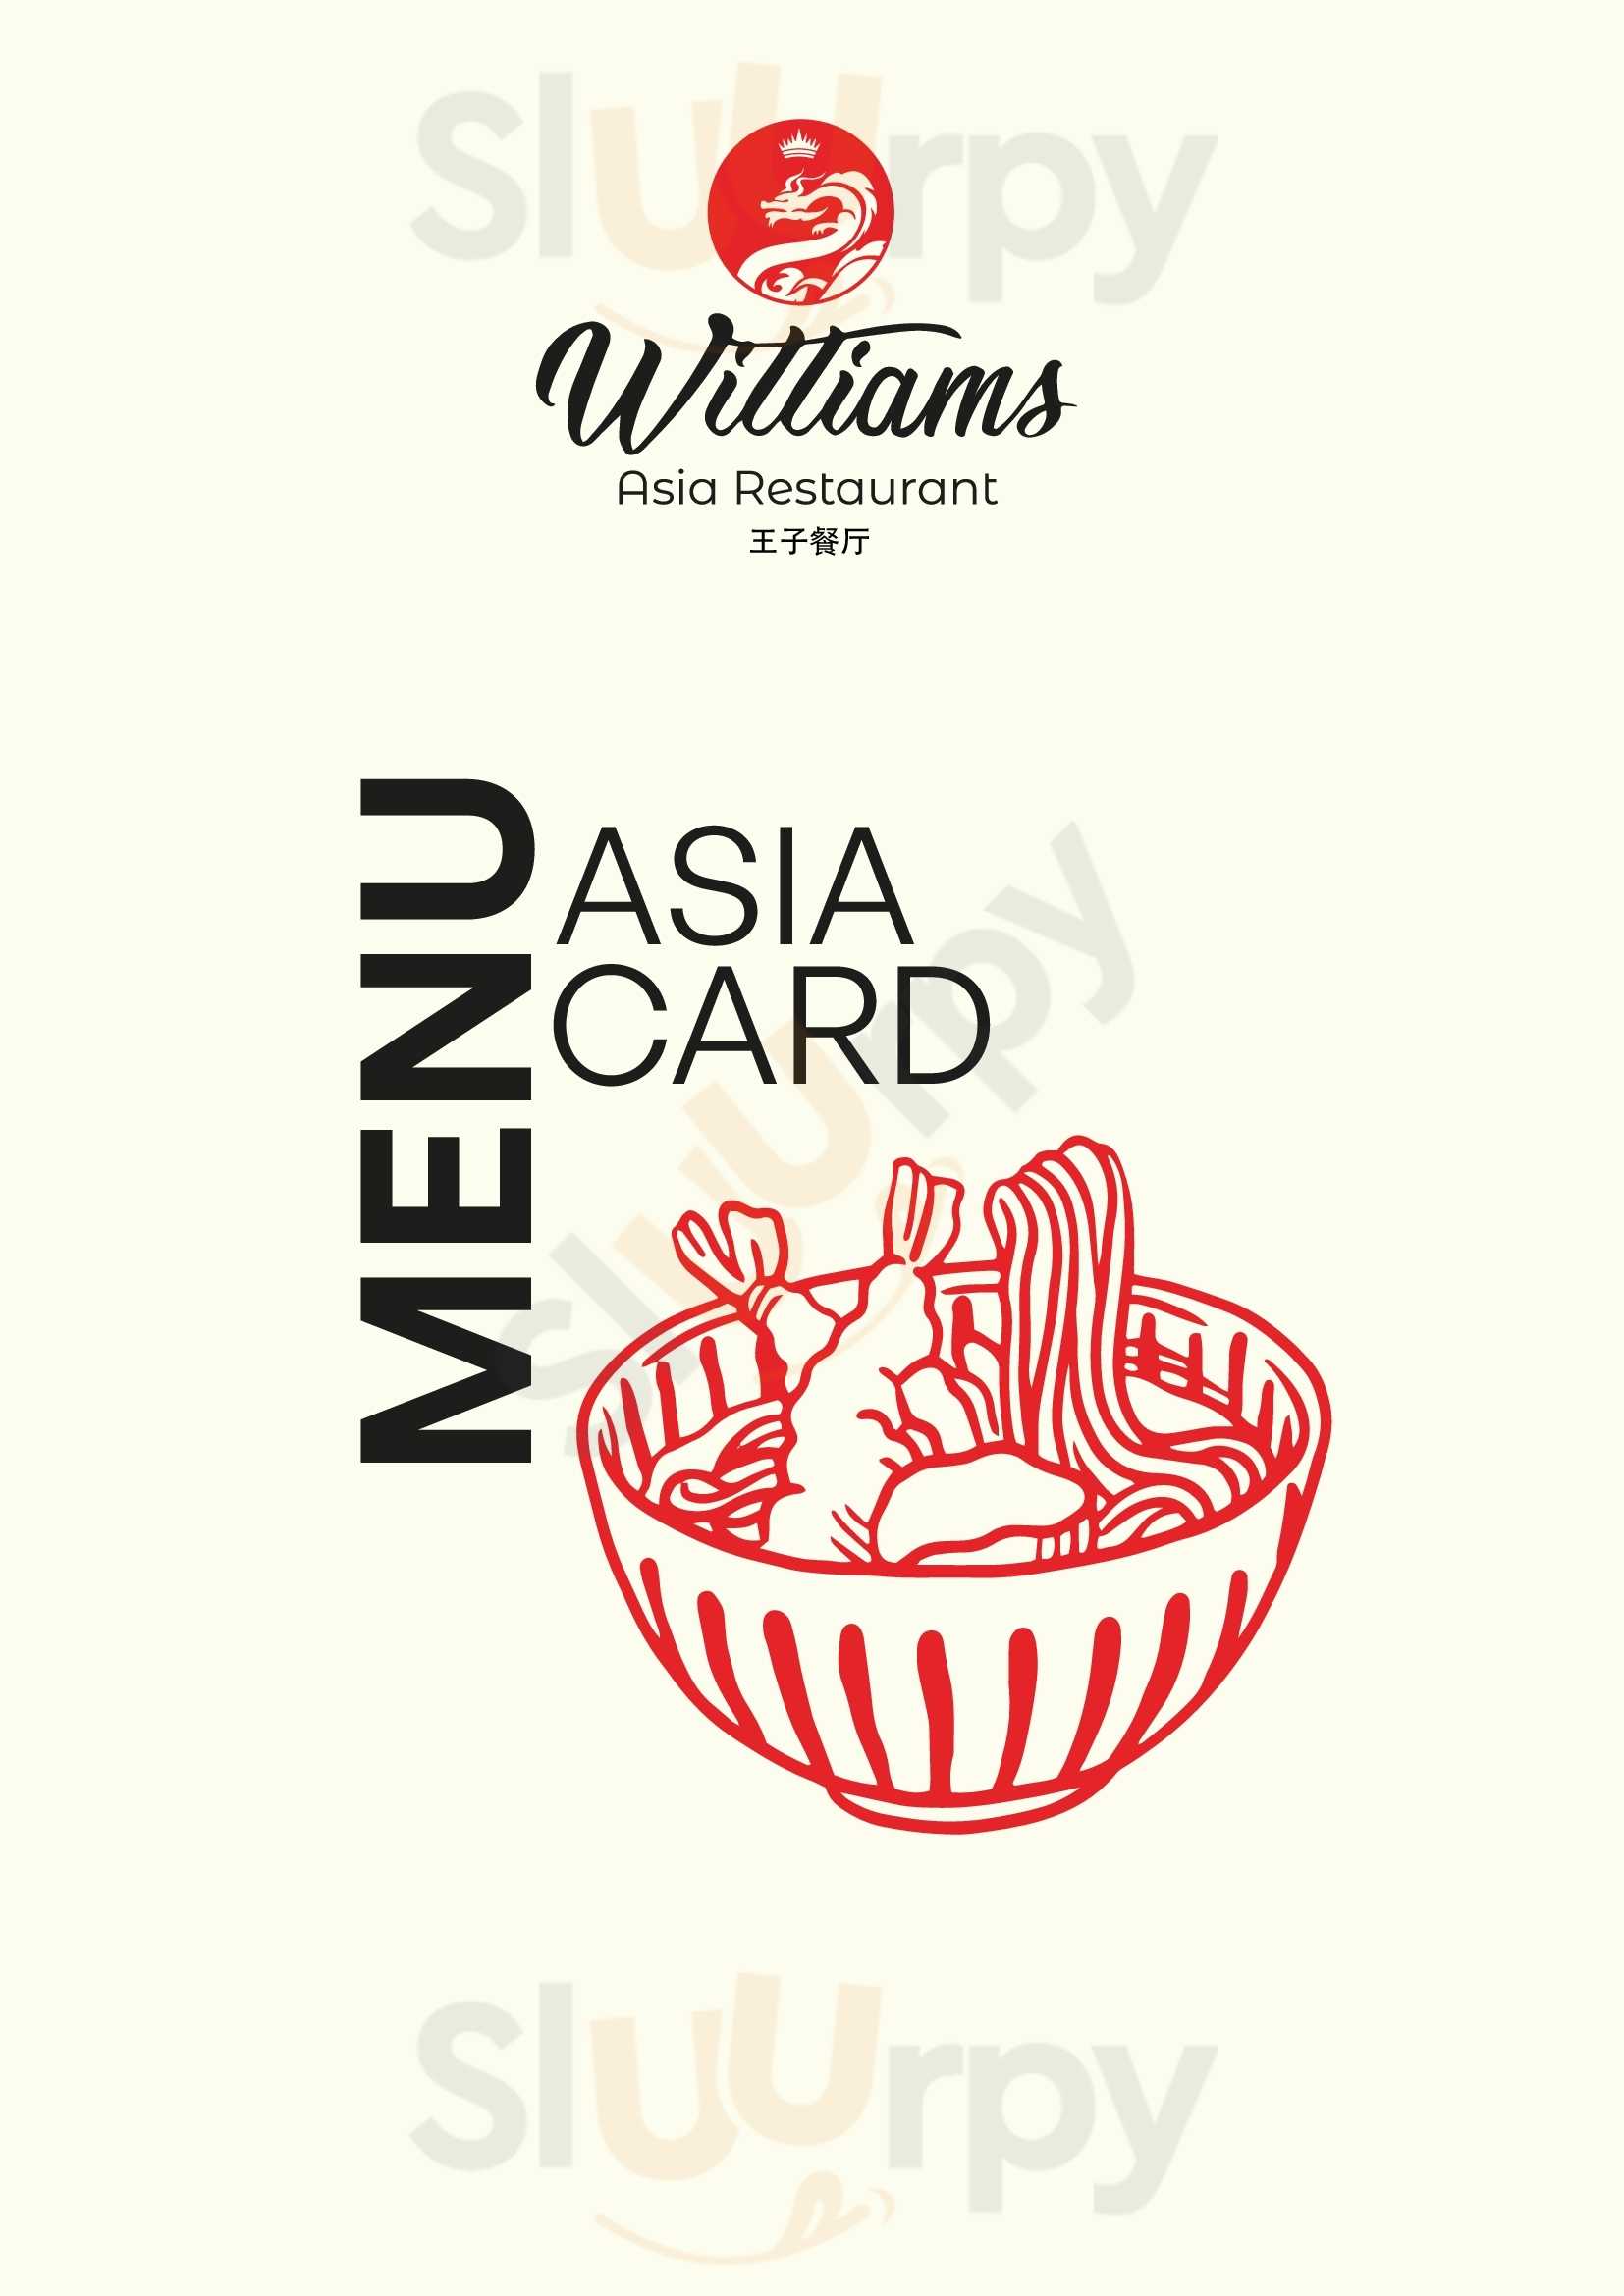 William's Asia Restaurant Winterthur Menu - 1